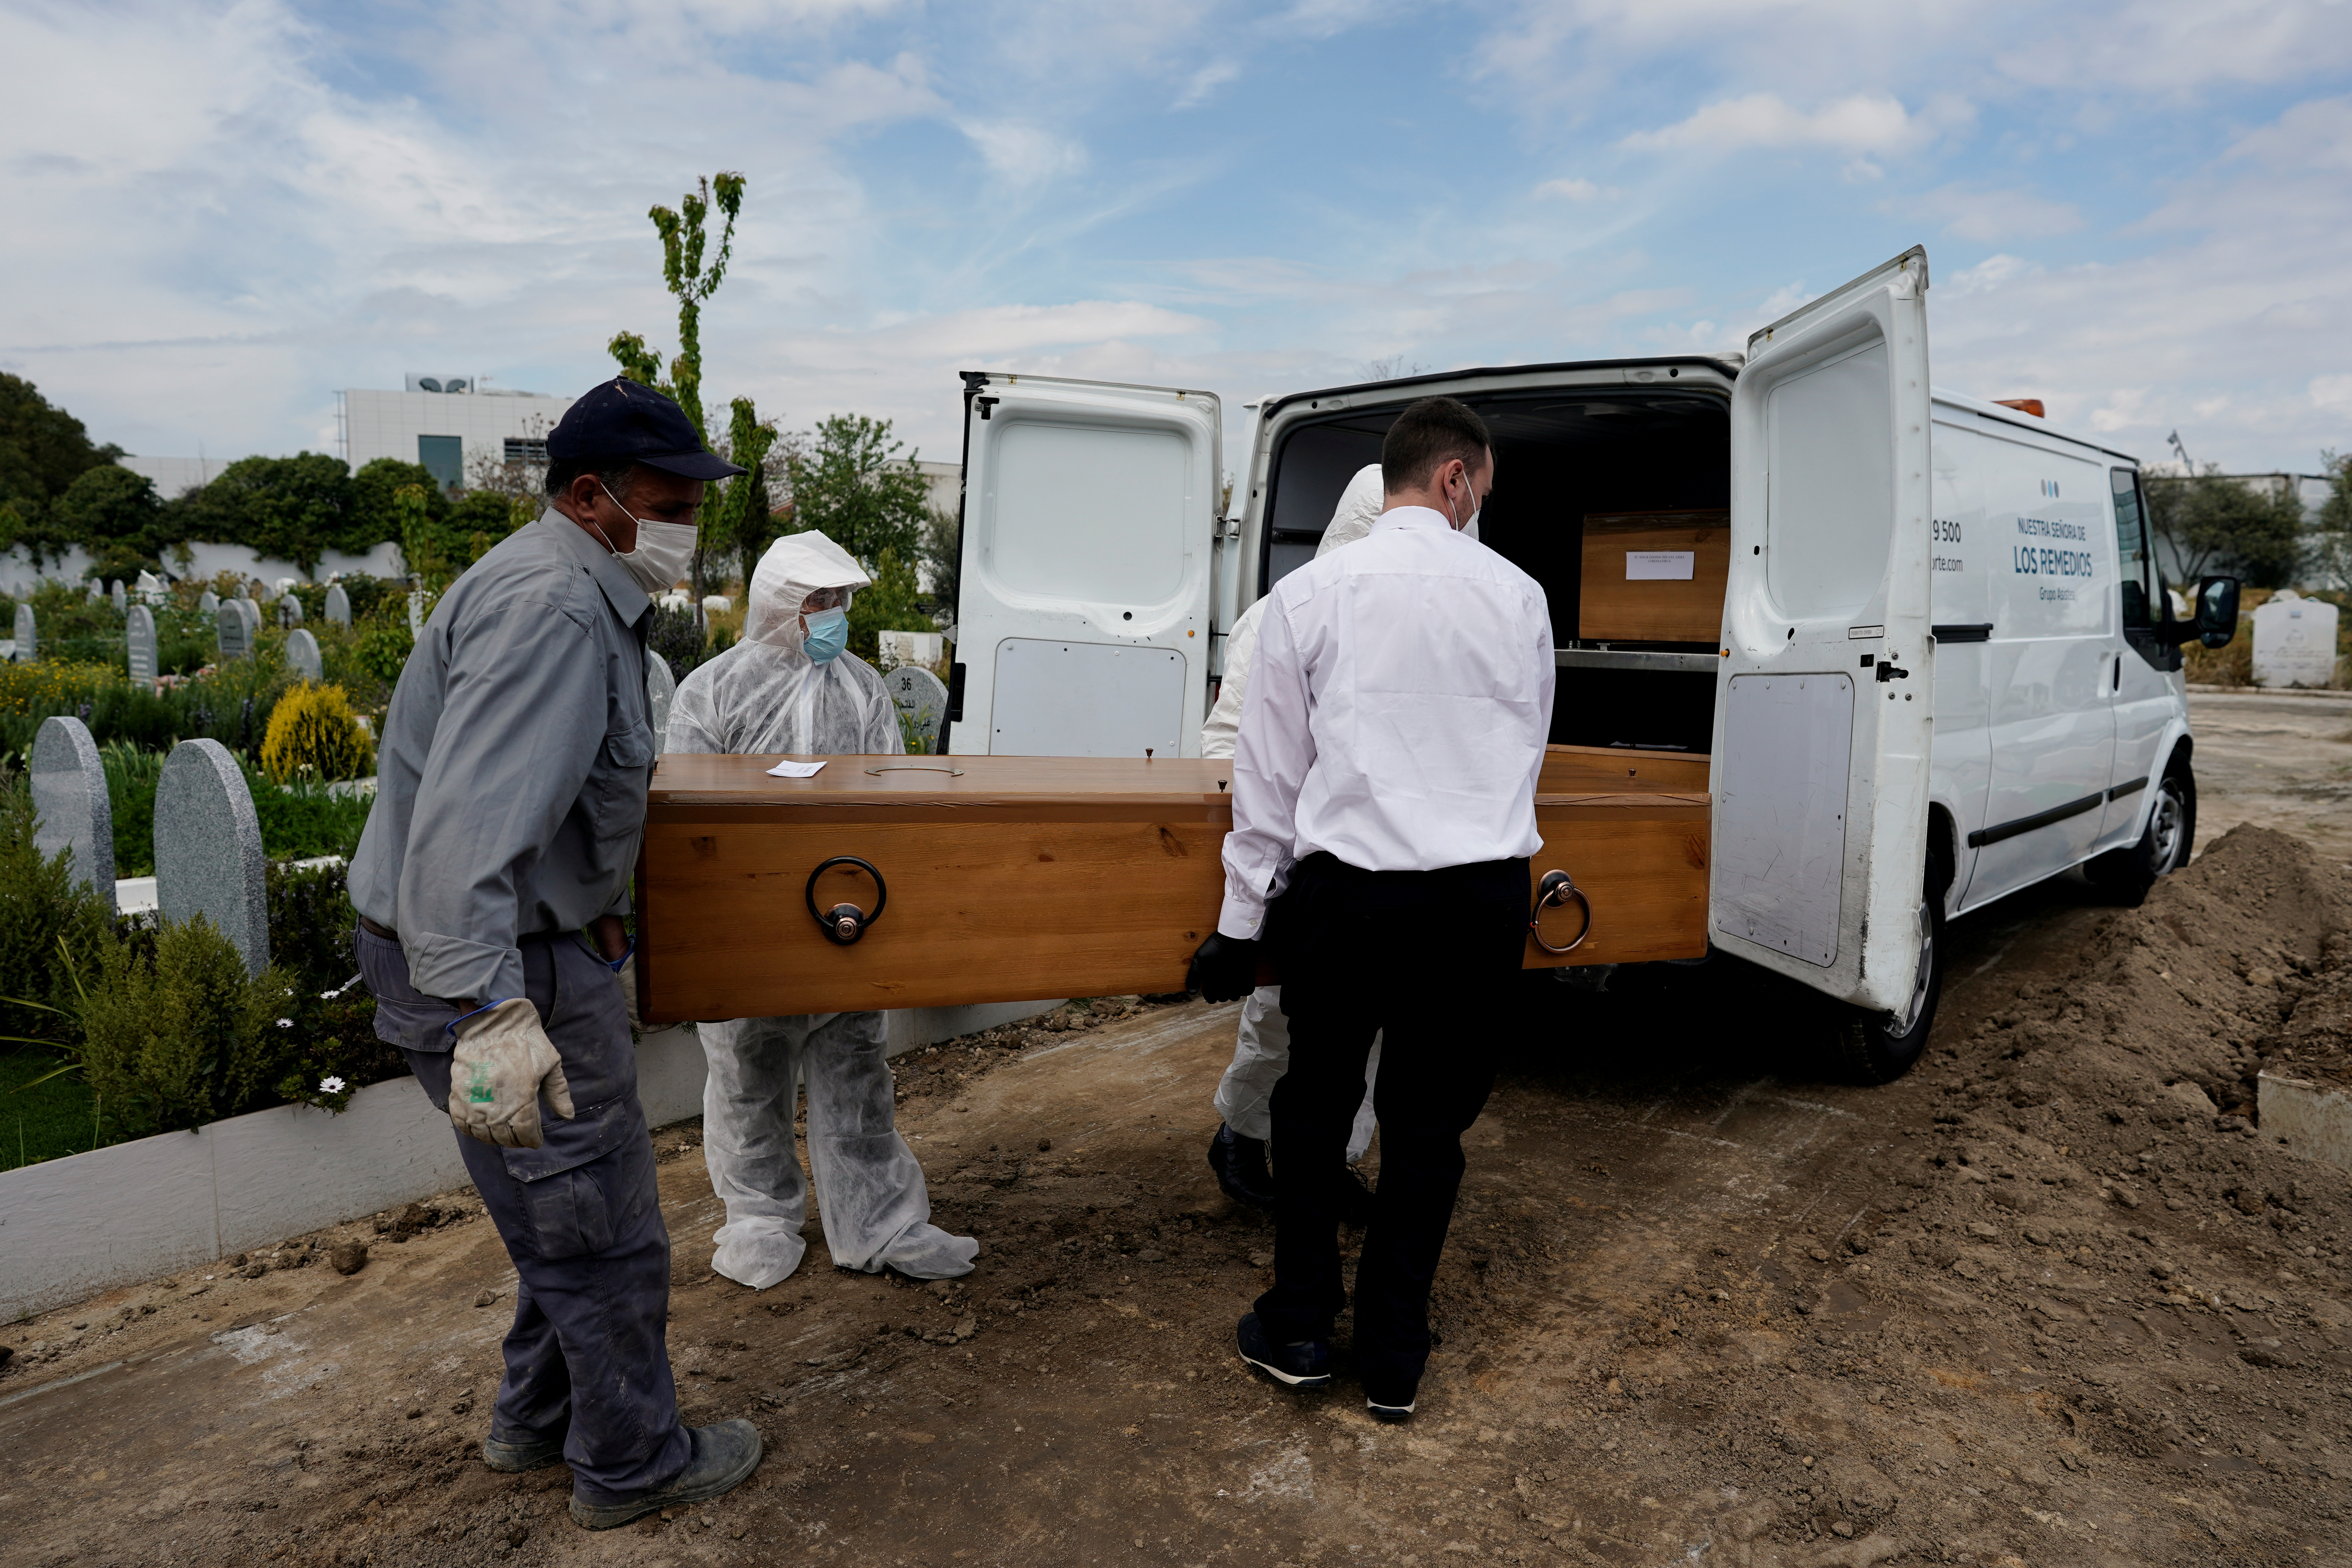 El entierro de una víctima de covid en el cementerio musulmán de Grinon, España, en una foto del 8 d abril de 2020 (REUTERS/Juan Medina/archivo)